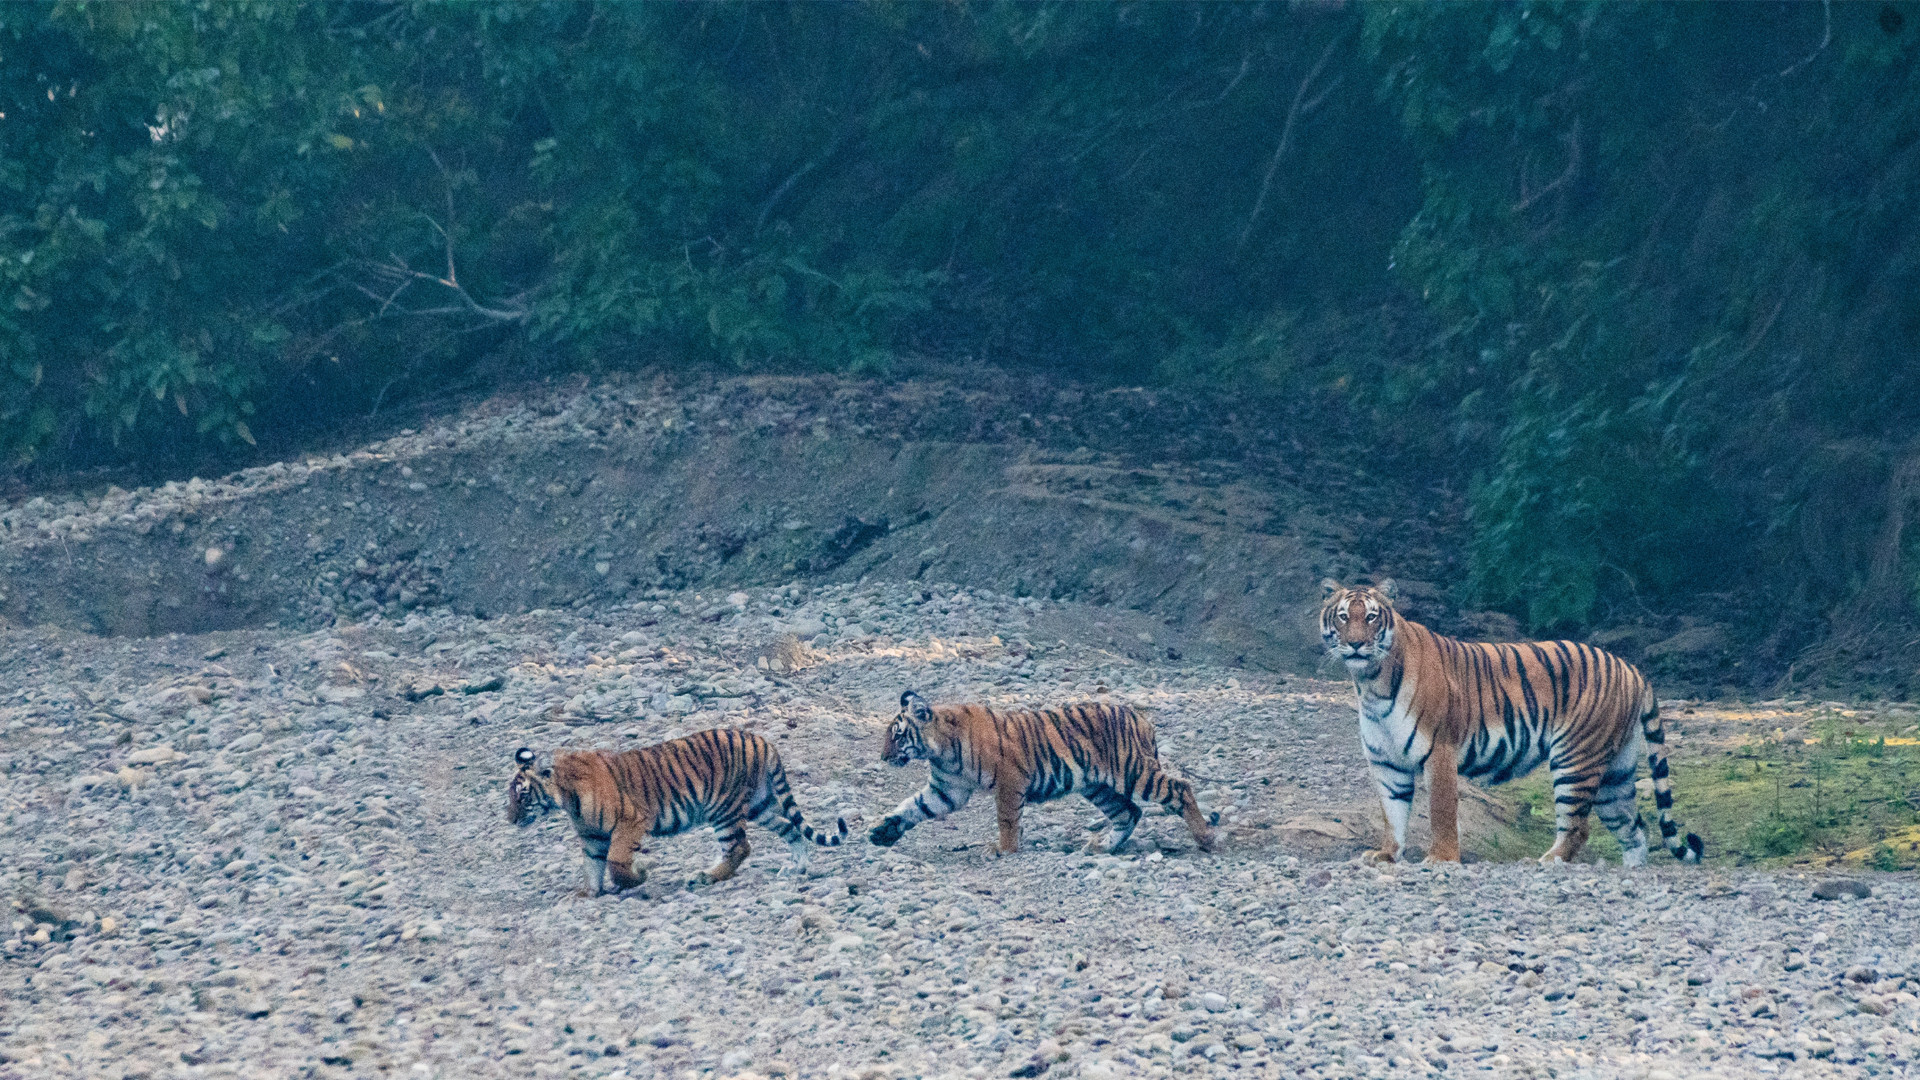 tiger-deepak rajbanshi-bardiya-wildlife1706927193.jpg